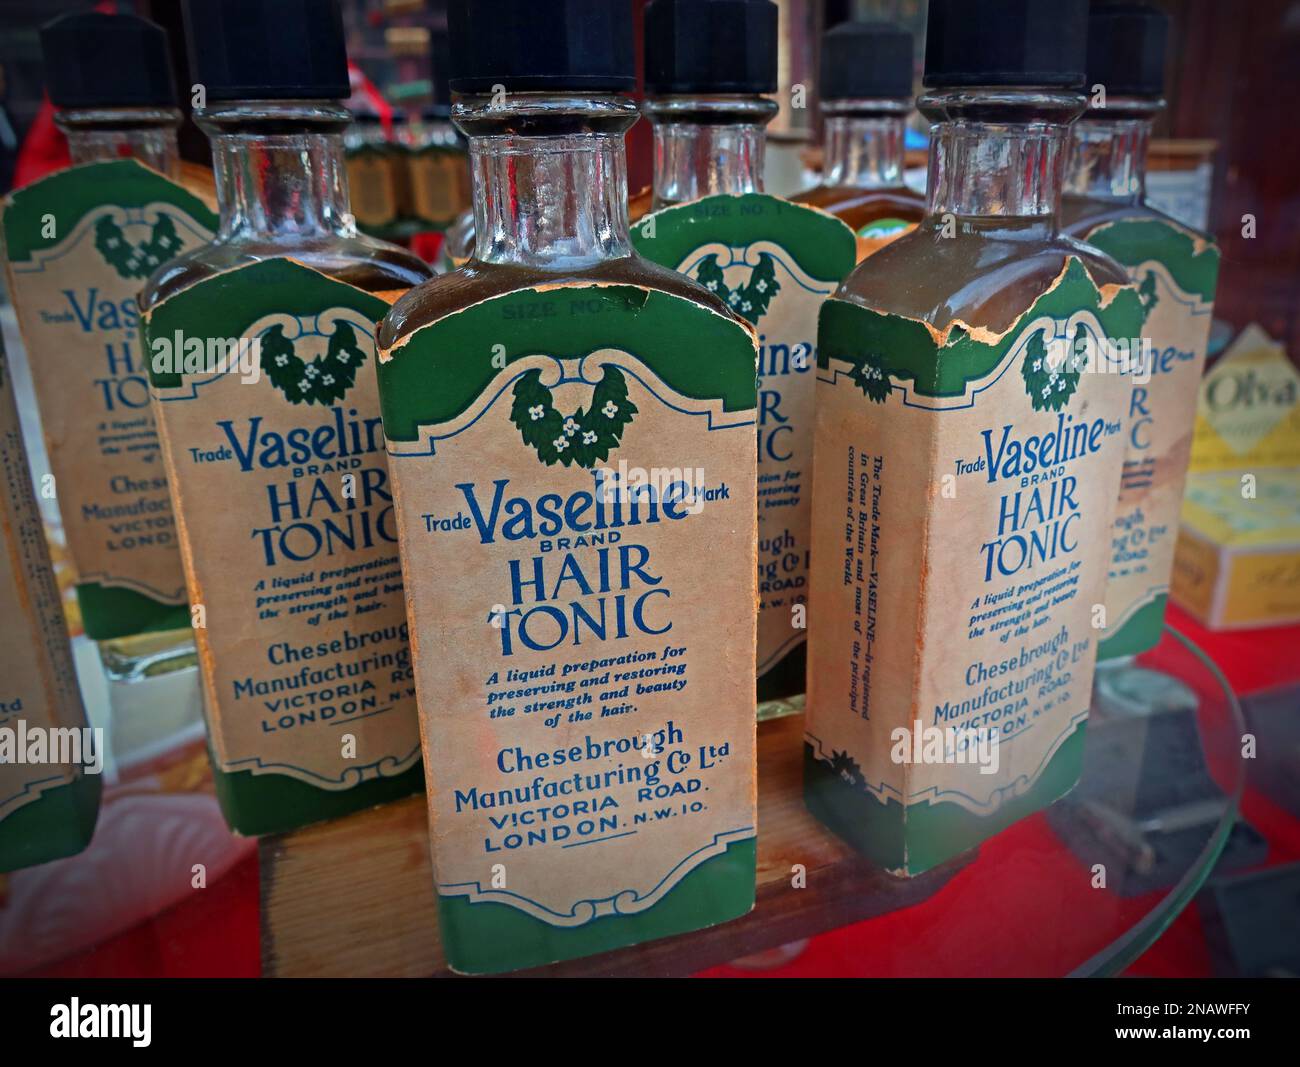 Vieilles bouteilles de marque médicinale Vaseline (marque commerciale) tonique capillaire, Cheesebrough Manufacturing Co Ltd, Victoria Road, Londres NW10, Angleterre, Royaume-Uni Banque D'Images